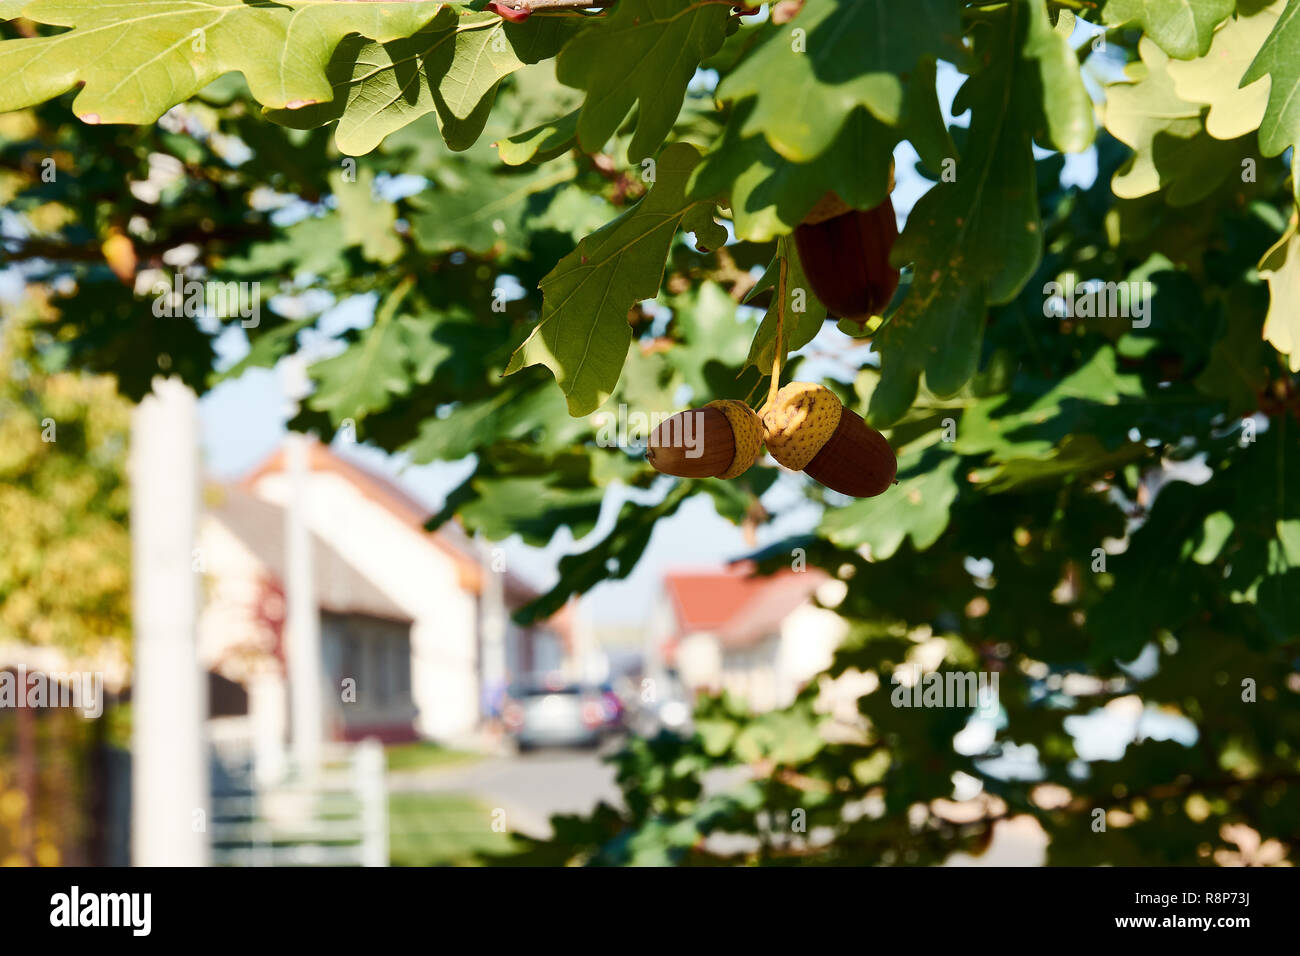 Dettaglio del acorn su albero di quercia tra foglie, edifici, su strada e la città di sfondo, soleggiata in estate o in autunno giorno Foto Stock